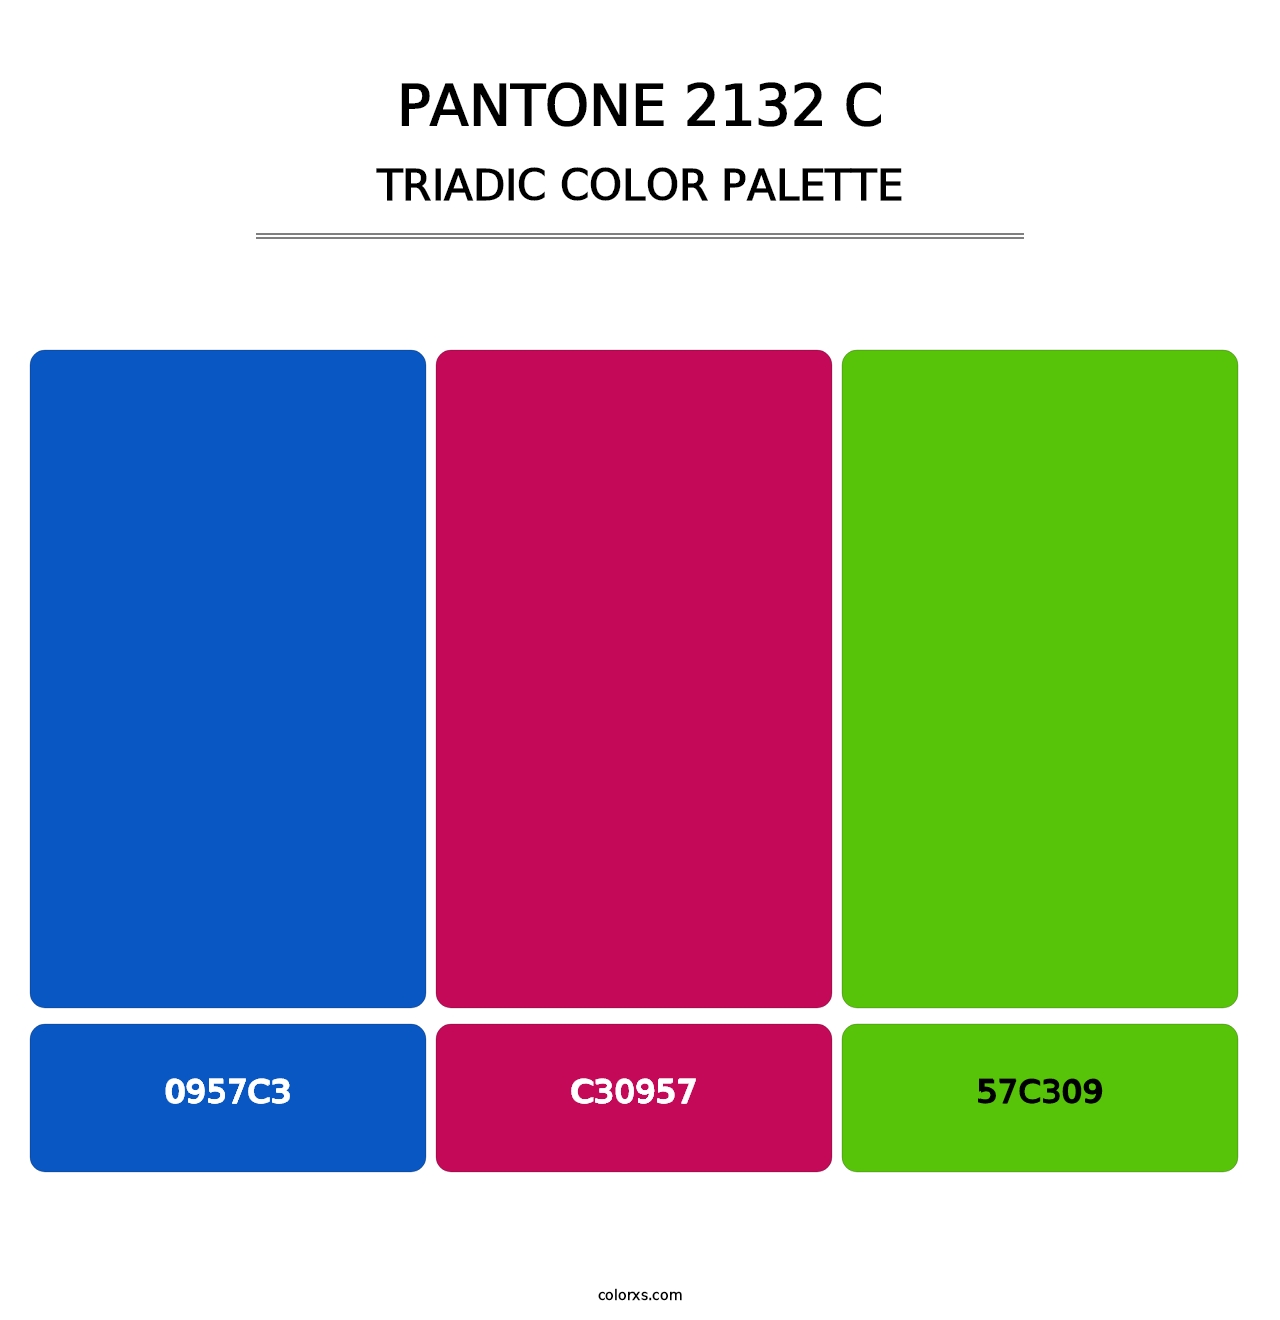 PANTONE 2132 C - Triadic Color Palette